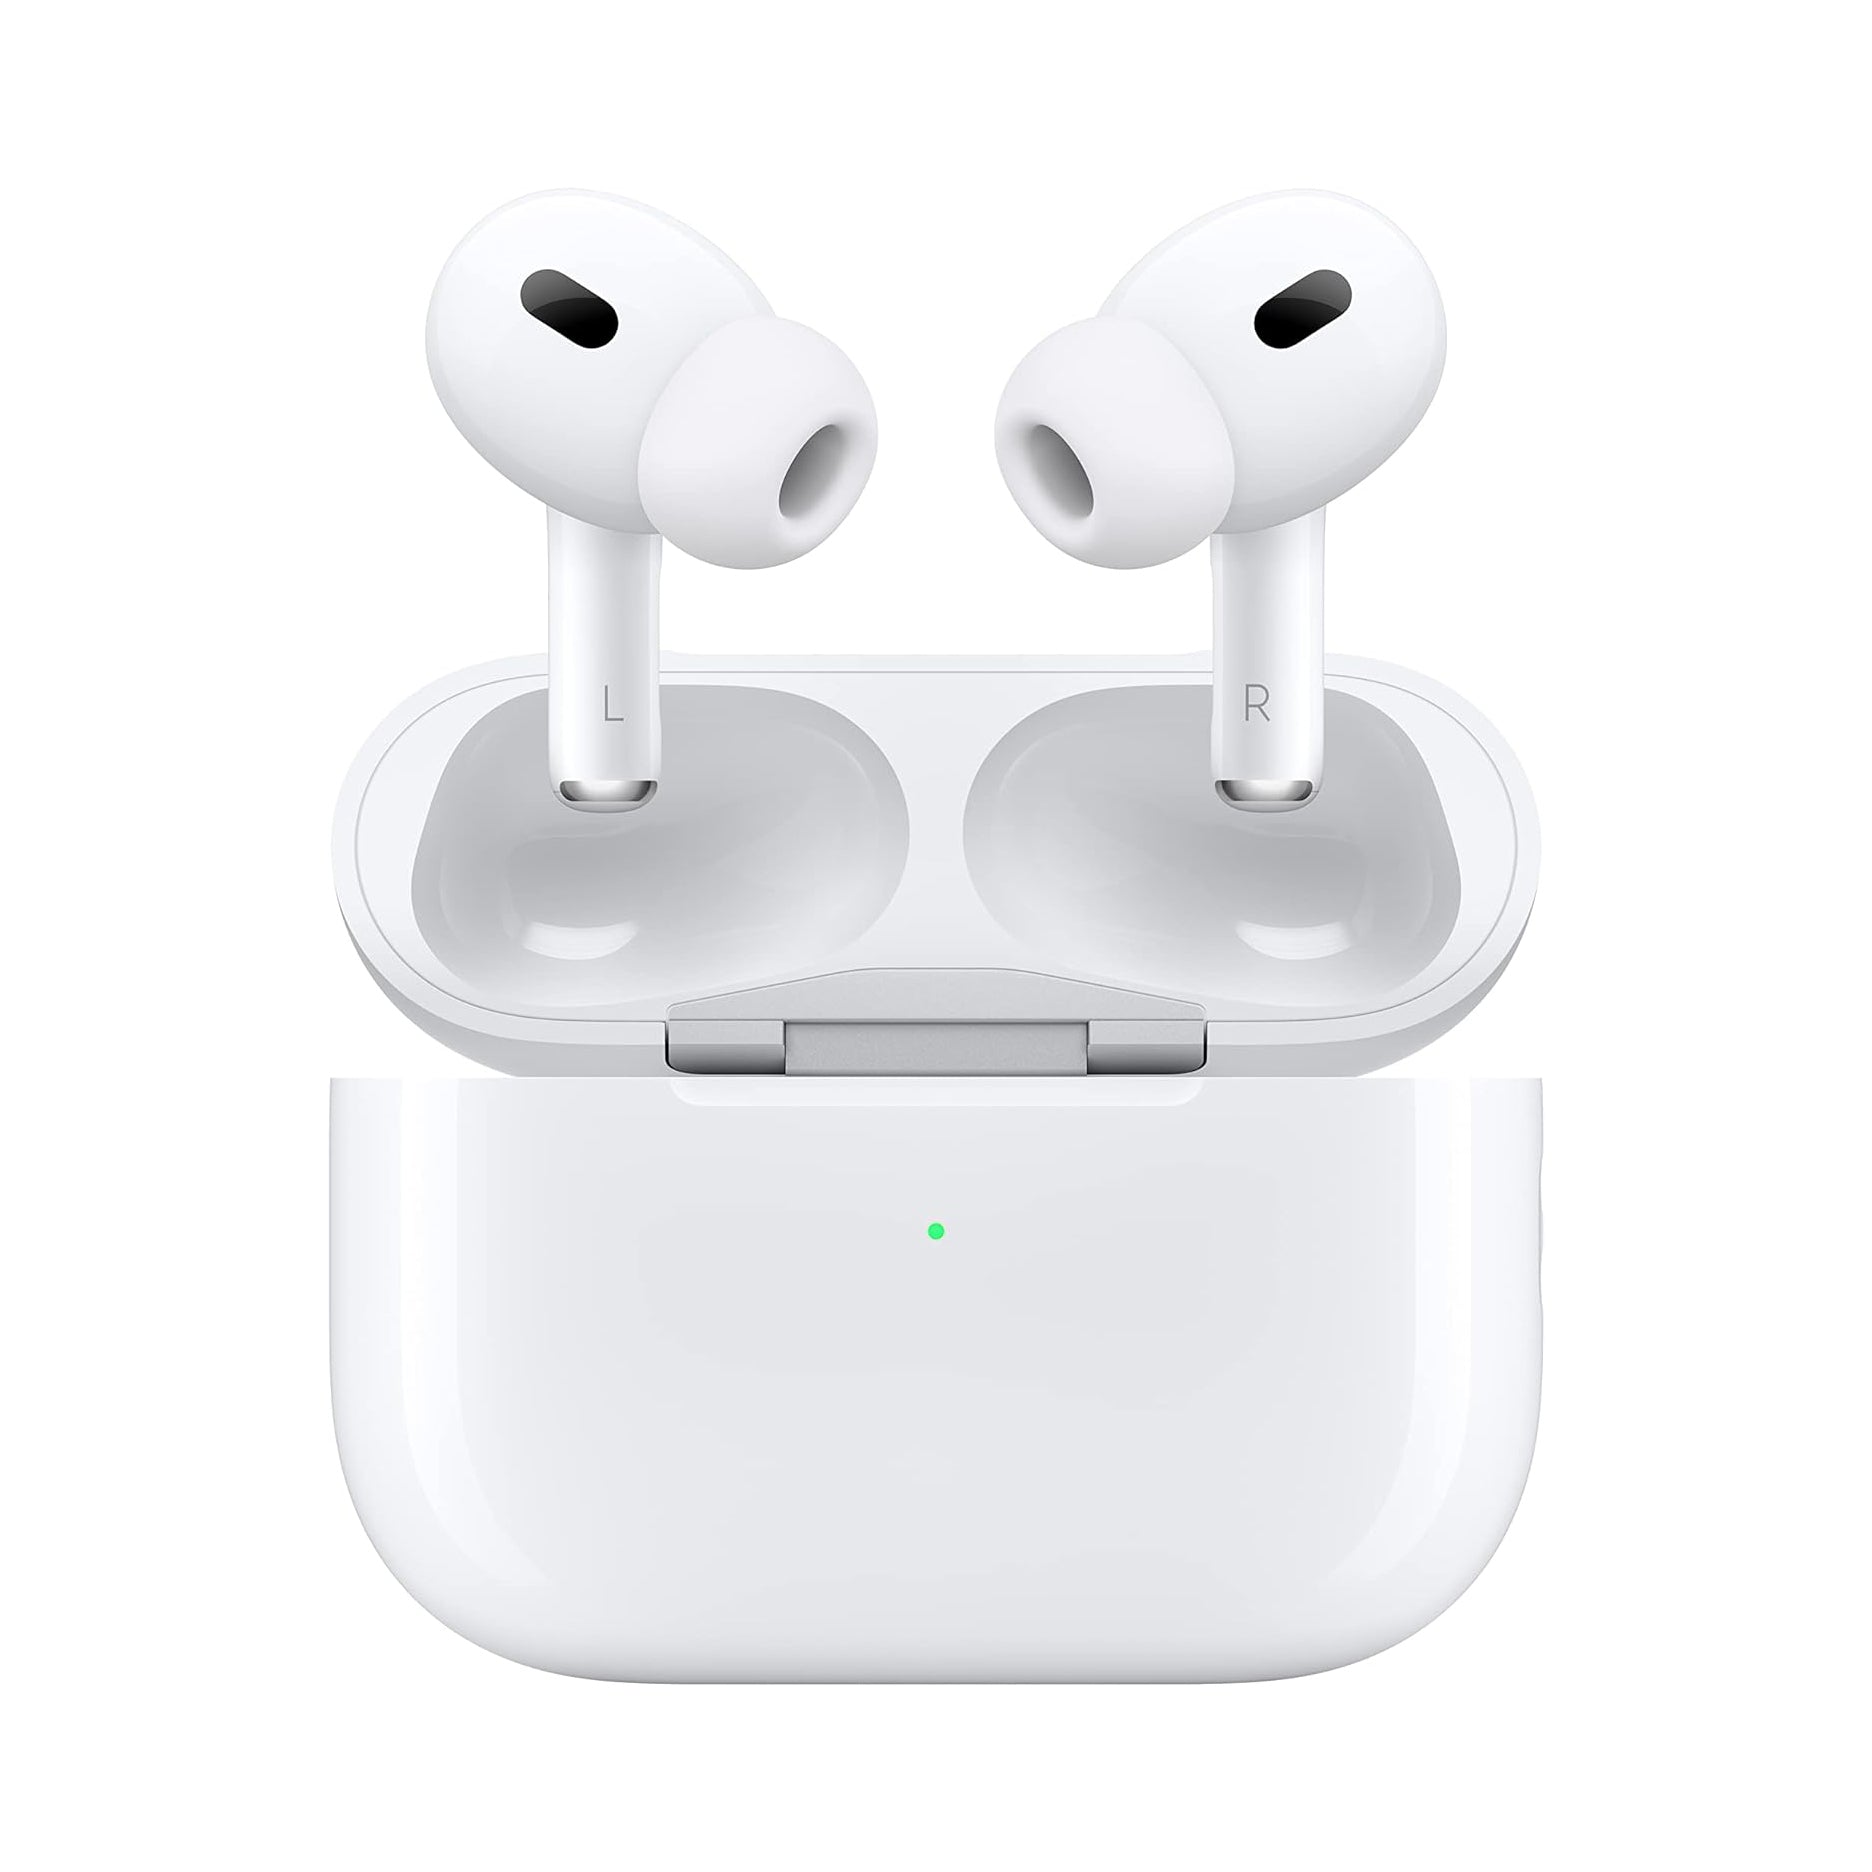 אוזניות אלחוטיות איירפודס פרו 2 - Apple AirPods Pro 2